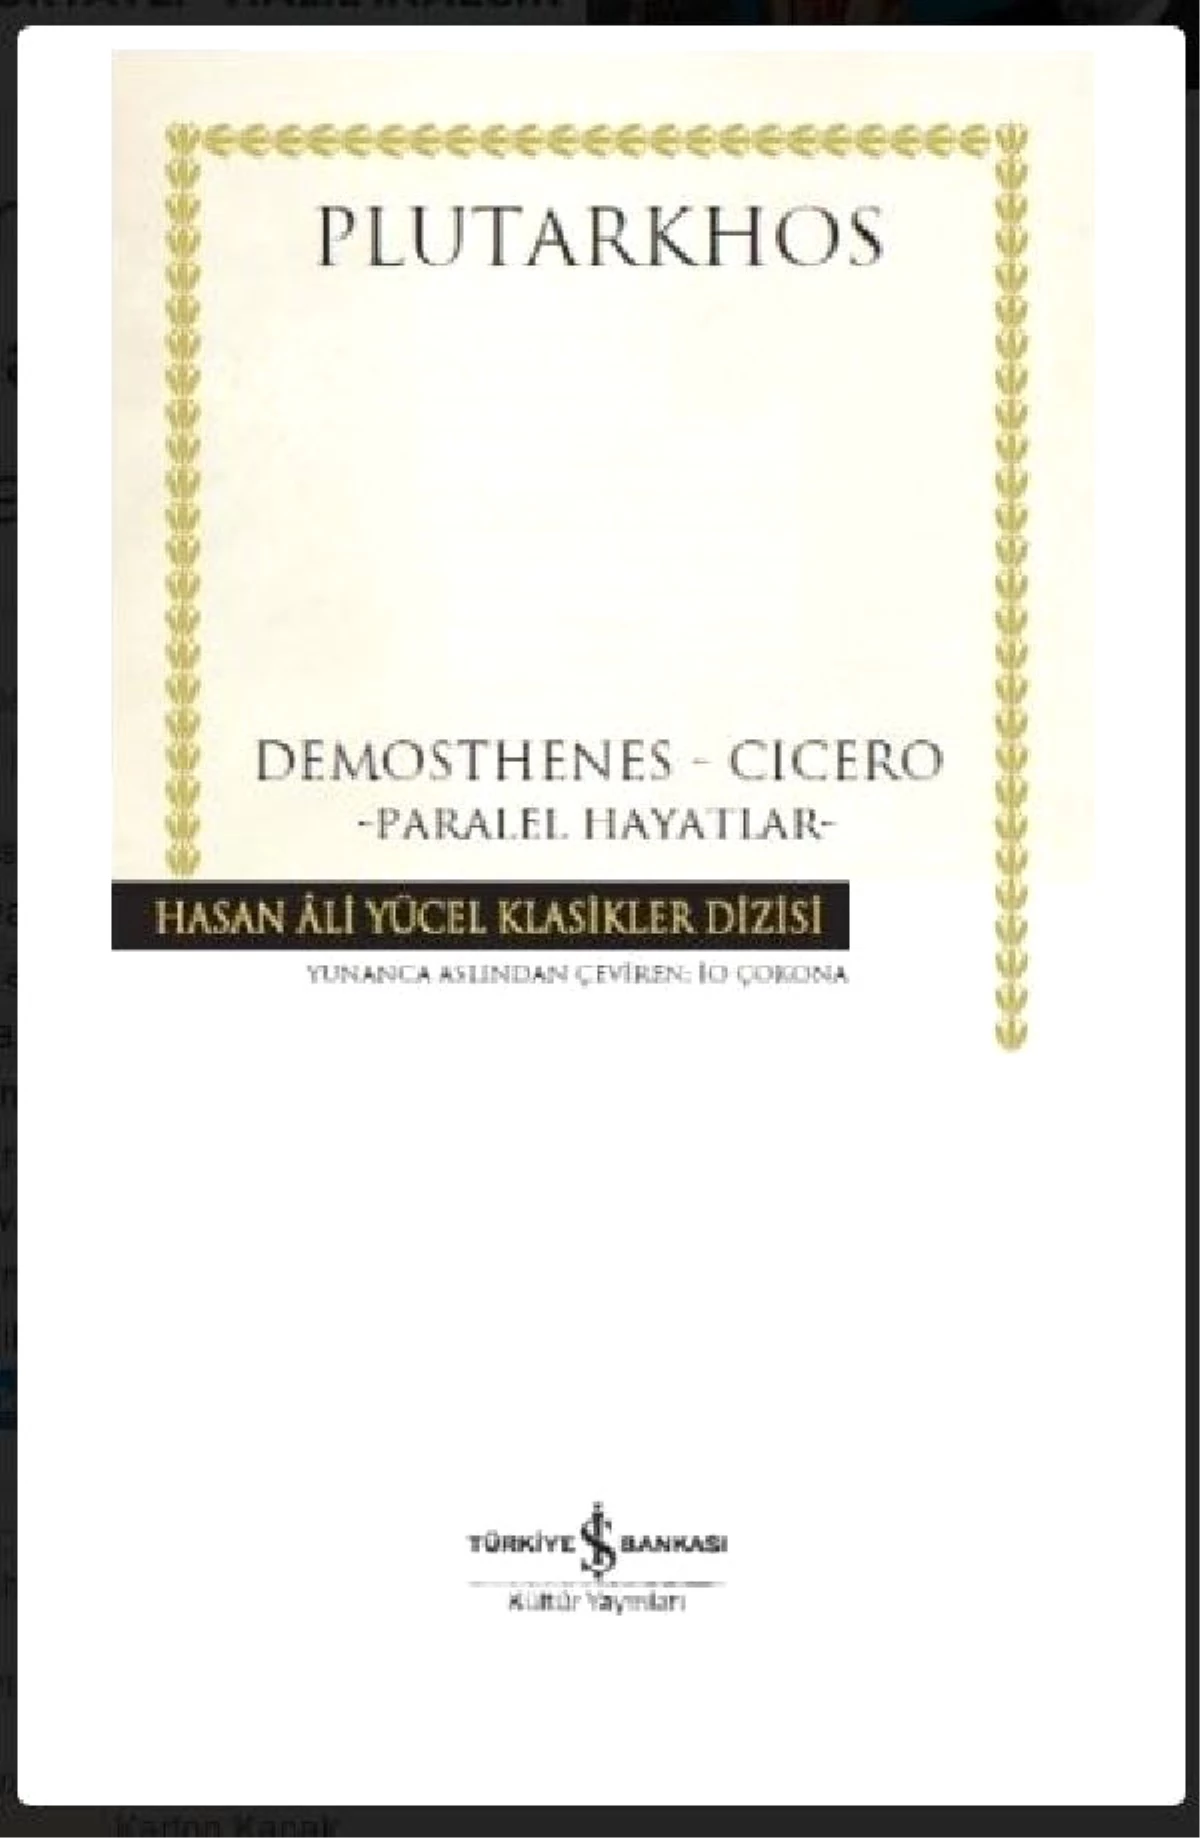 Plutarkhos\'tan Yeni Kitap: Demosthenes - Cicero / Paralel Hayatlar